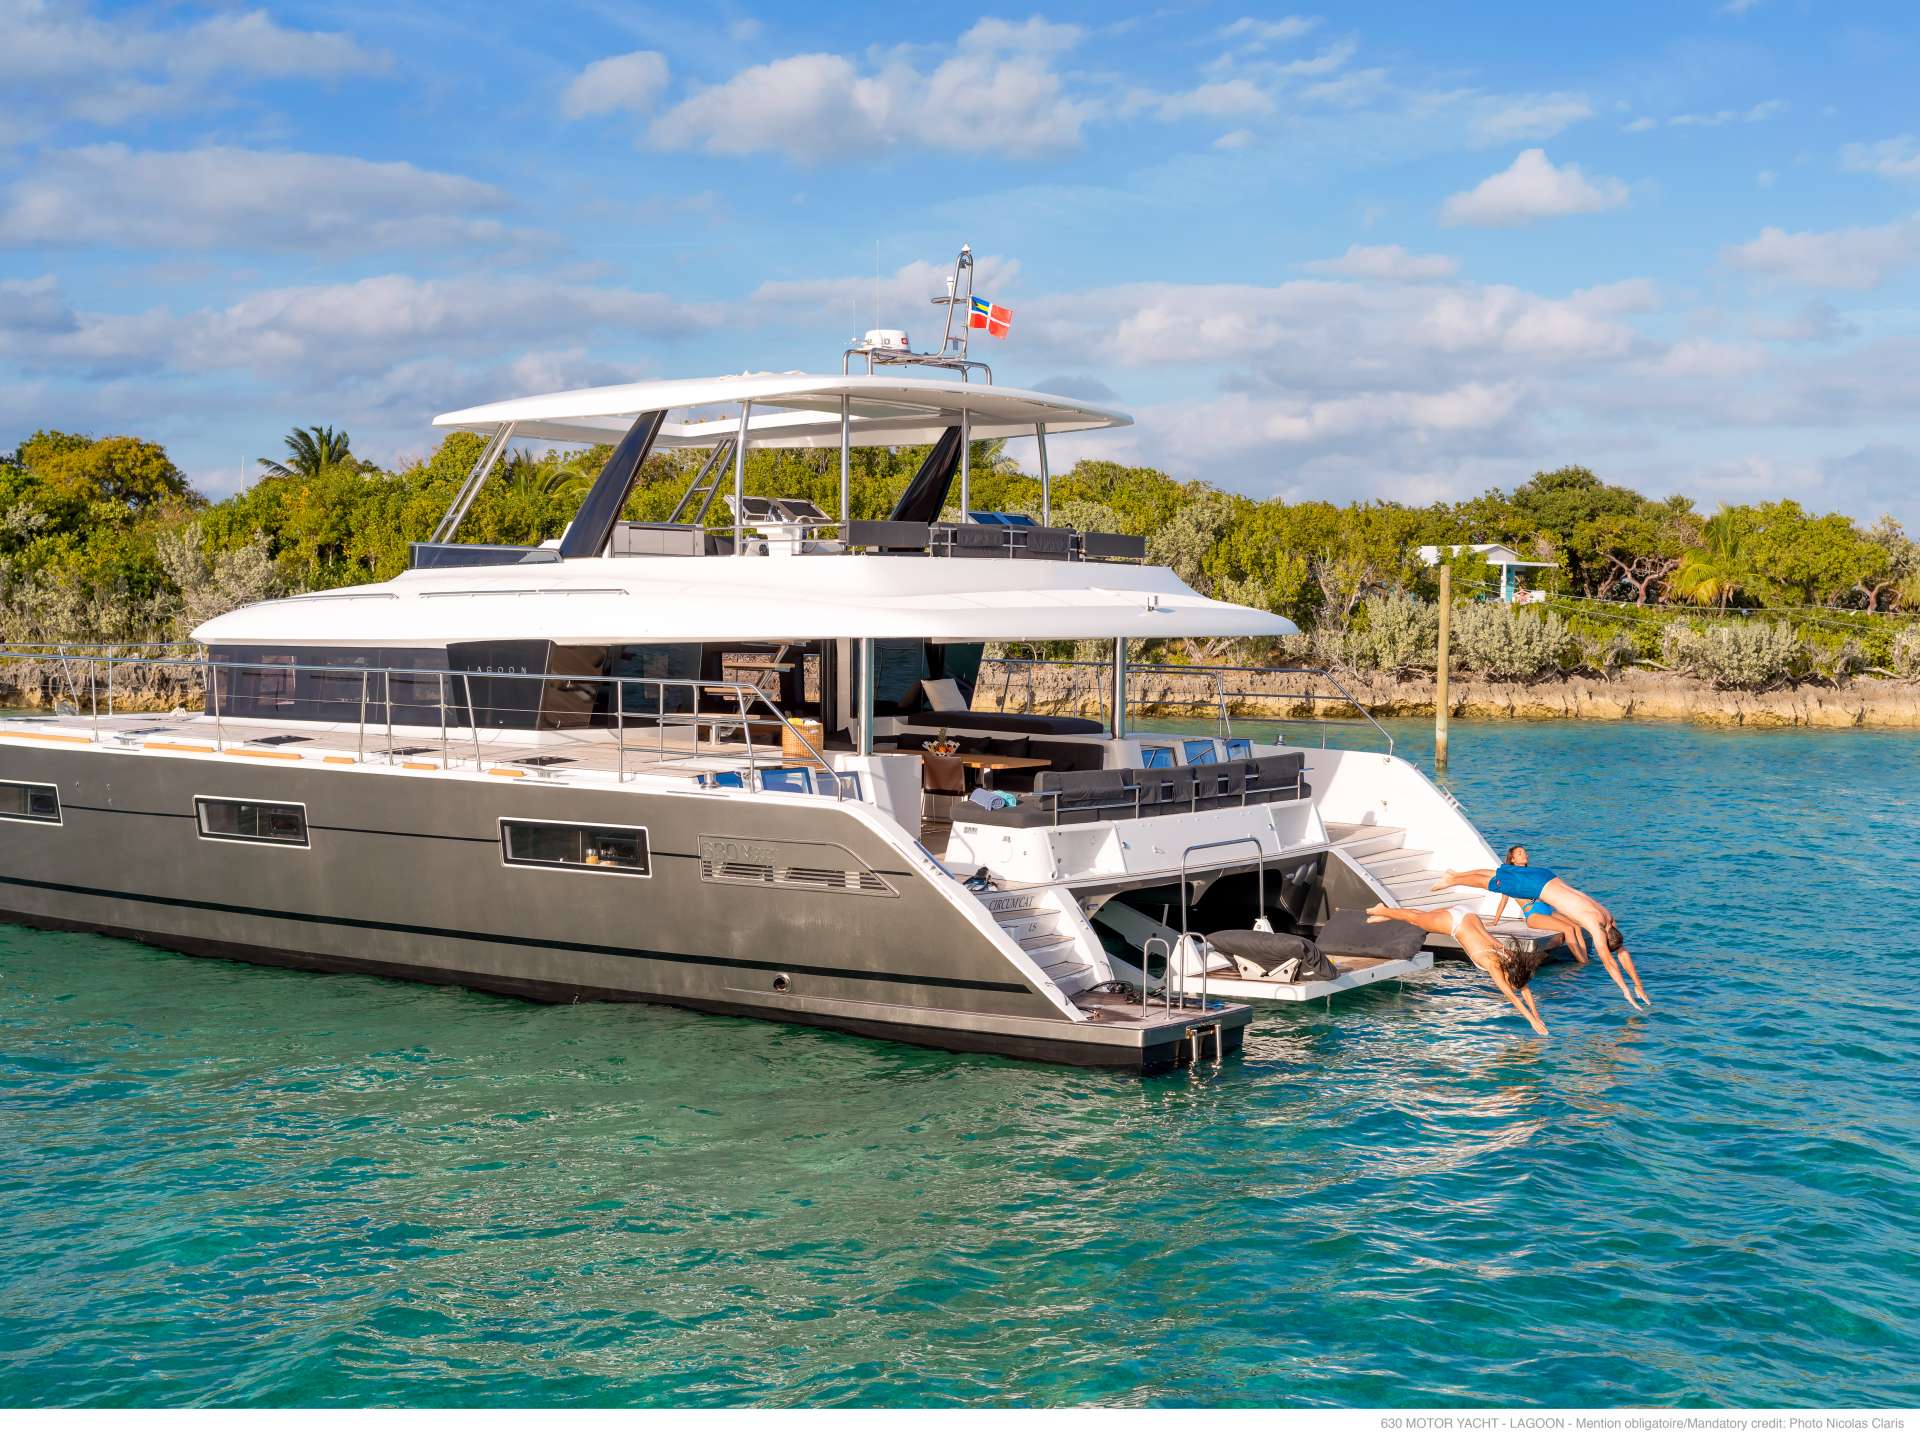 galux one - Yacht Charter Mykonos & Boat hire in Greece 4